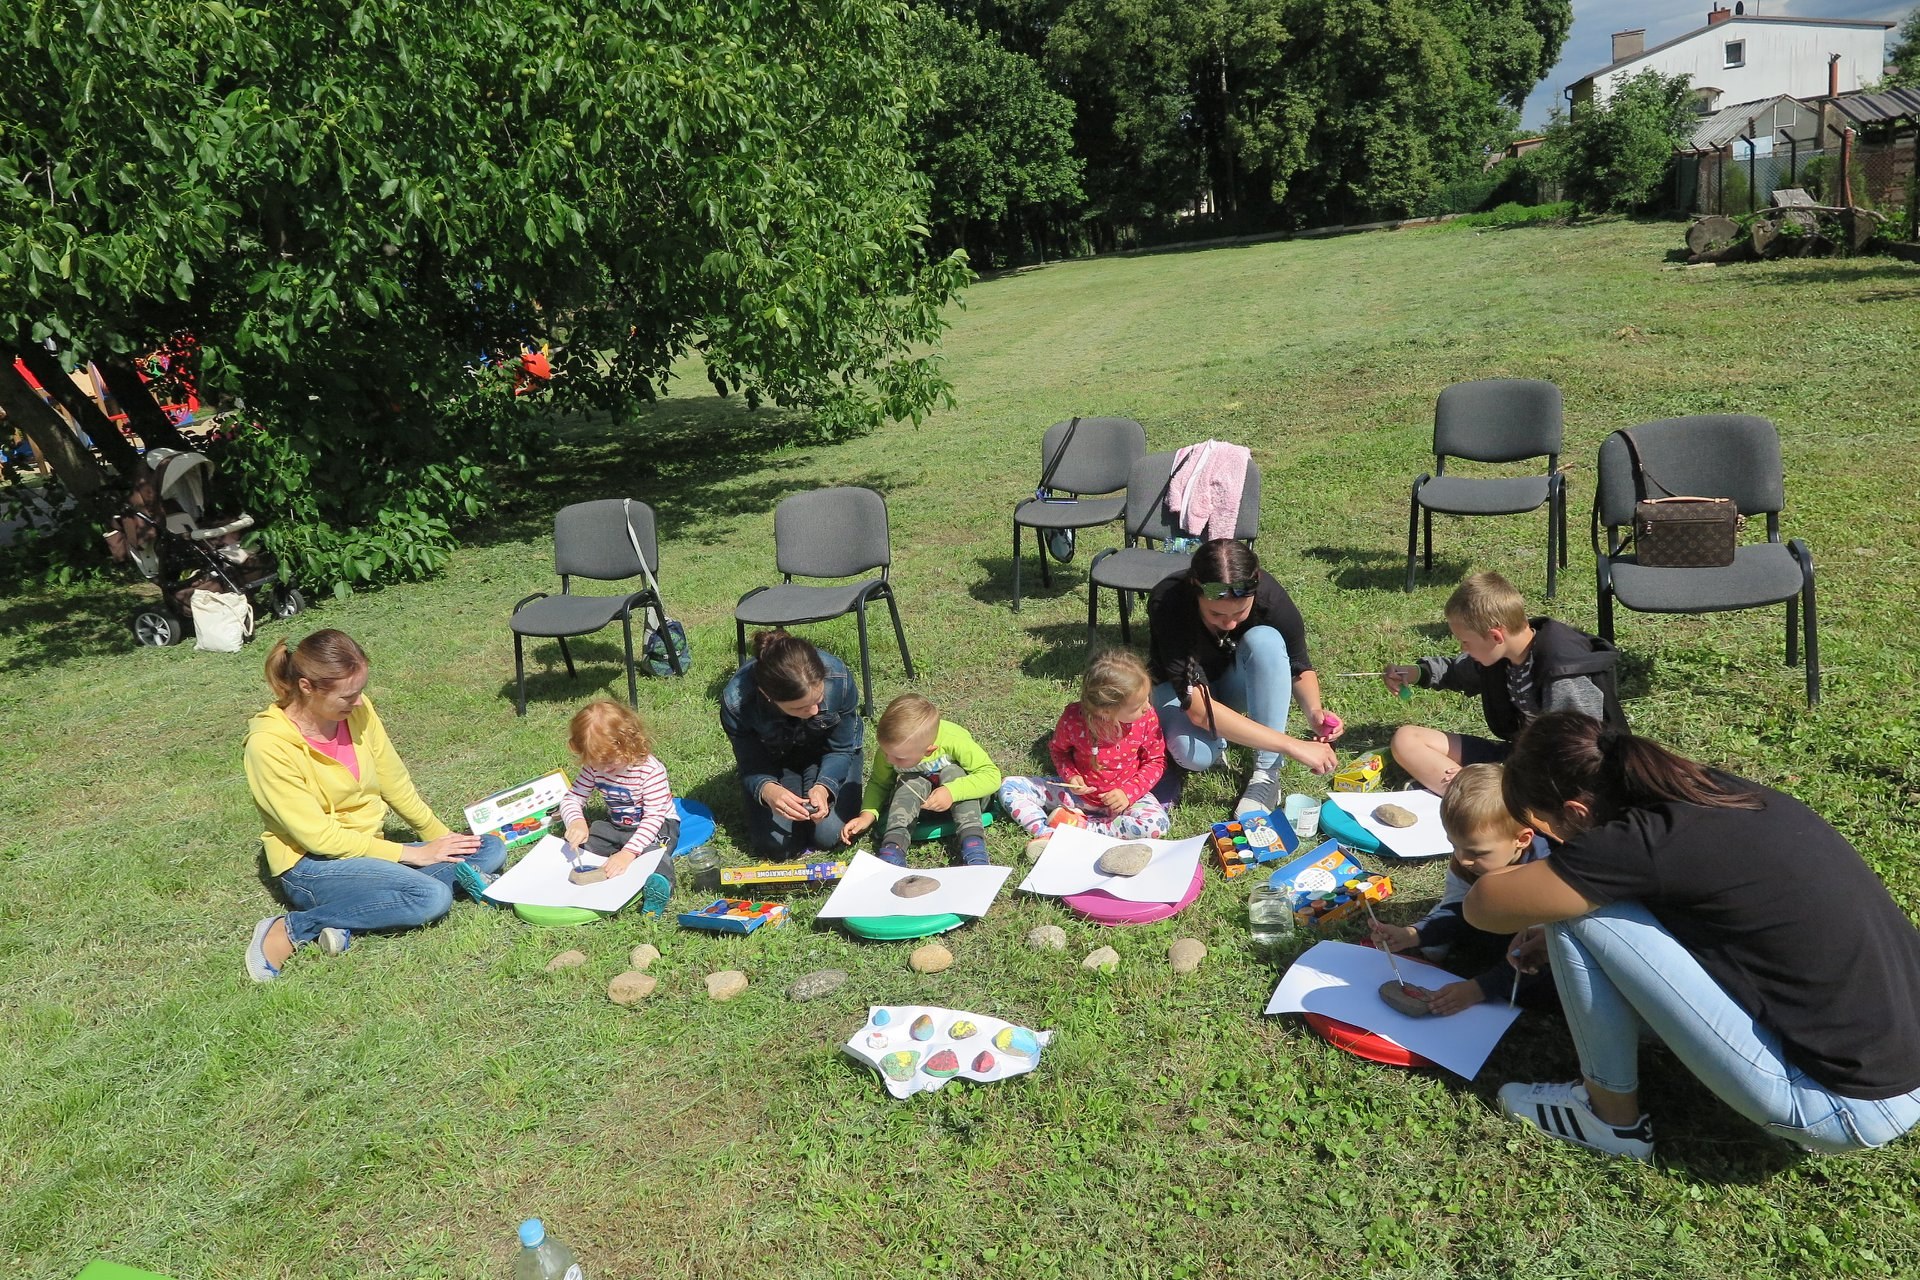 Na trawniku siedzi pięcioro dzieci oraz czterech opiekunów. Dzieci malują kamienie farbkami. 